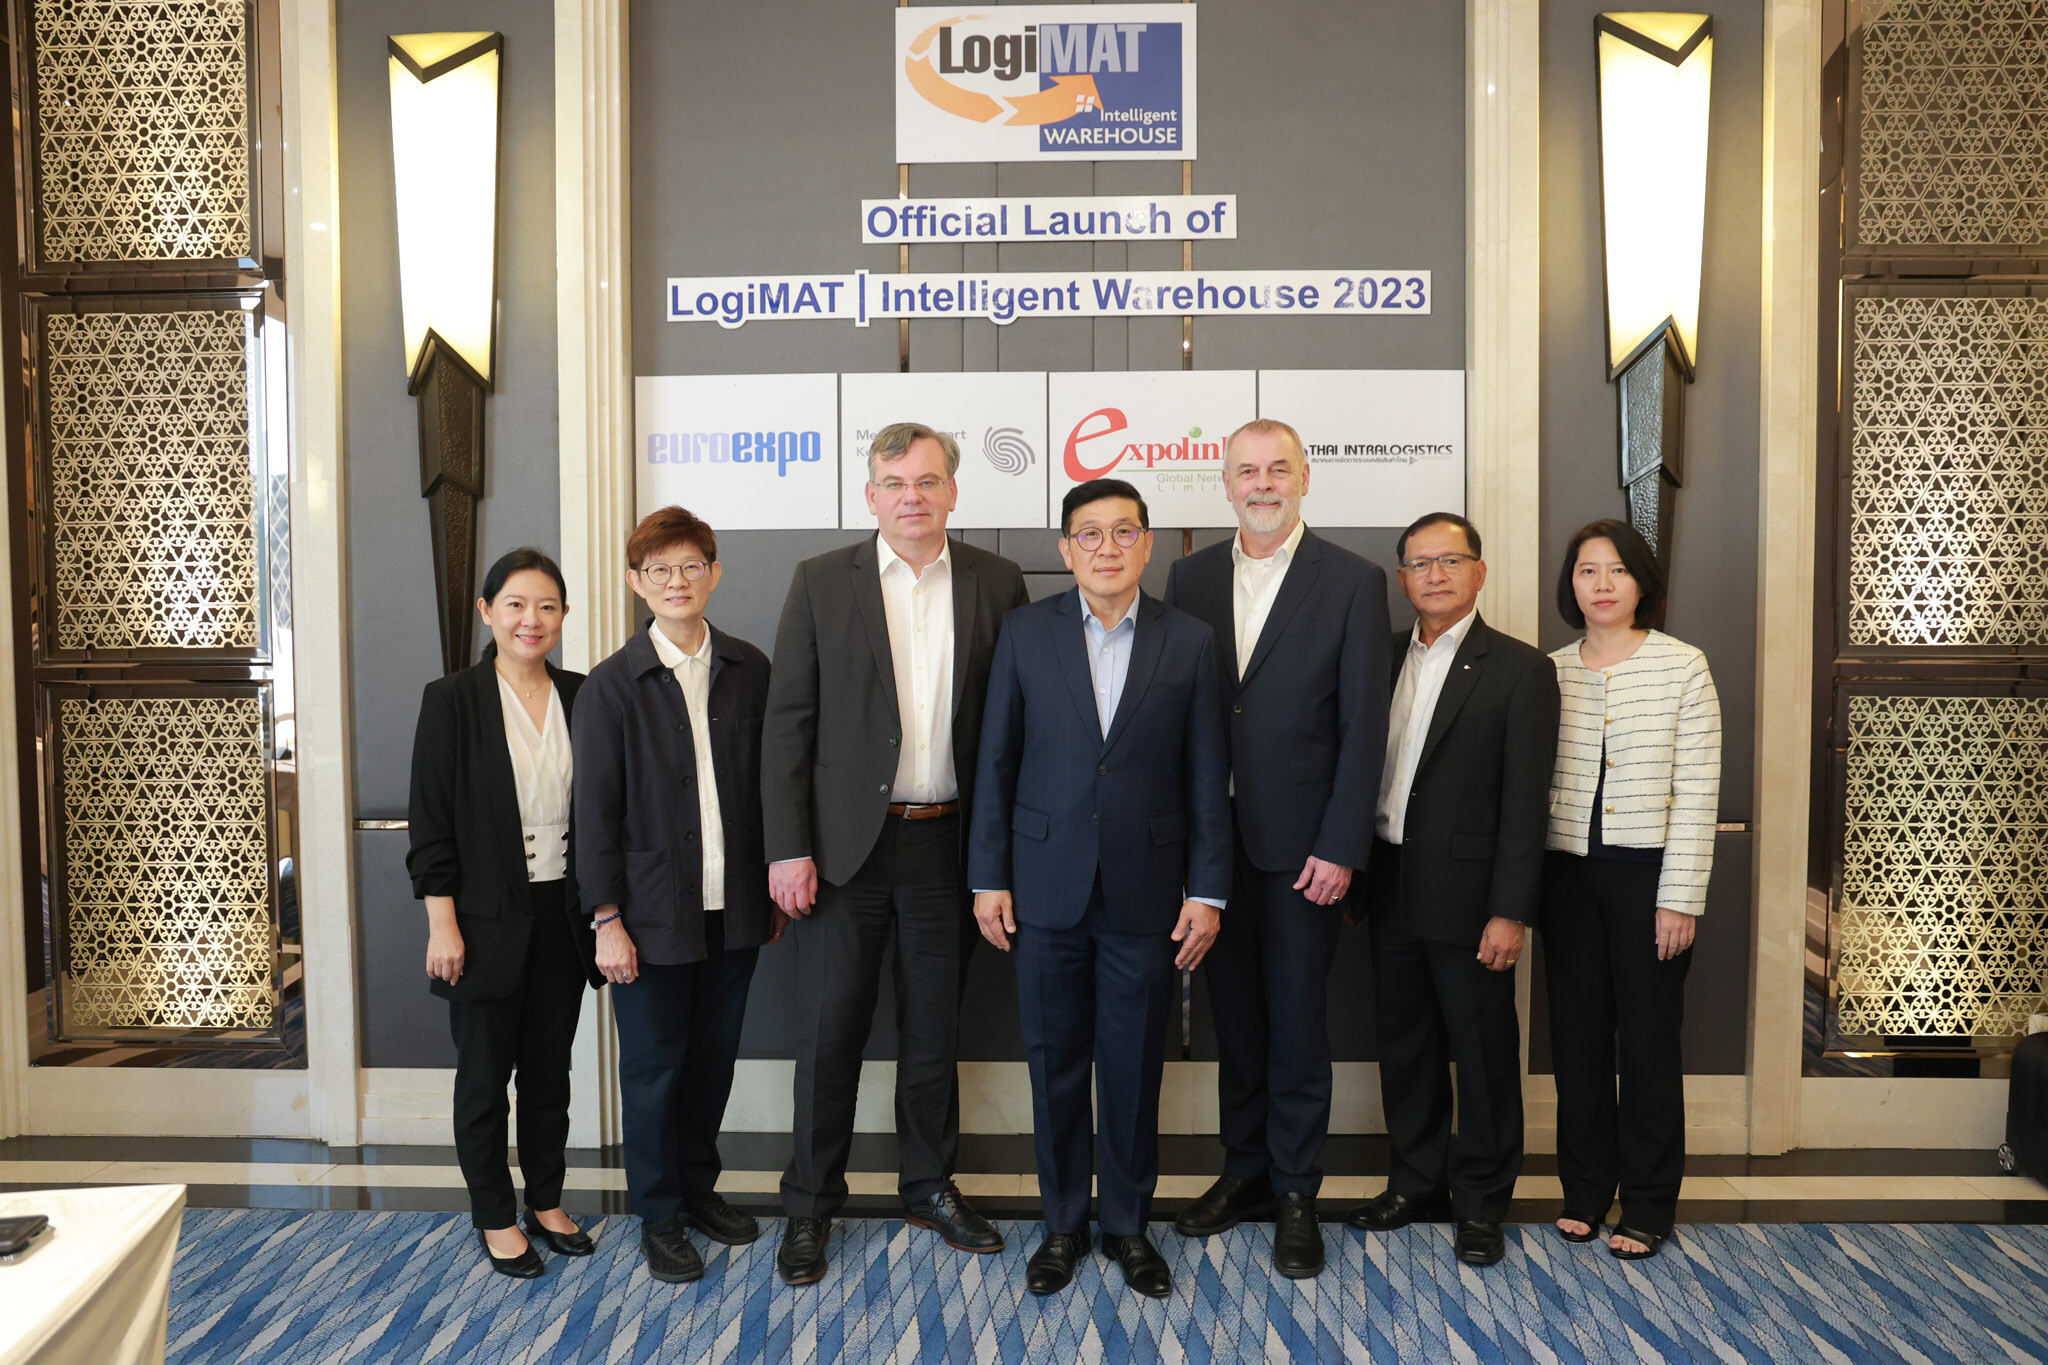 เตรียมความพร้อม พบกับงาน LogiMAT | Intelligent Warehouse 2023 การจัดงานแสดงสินค้าอินทราโลจิสติกส์ในประเทศไทย ครั้งยิ่งใหญ่